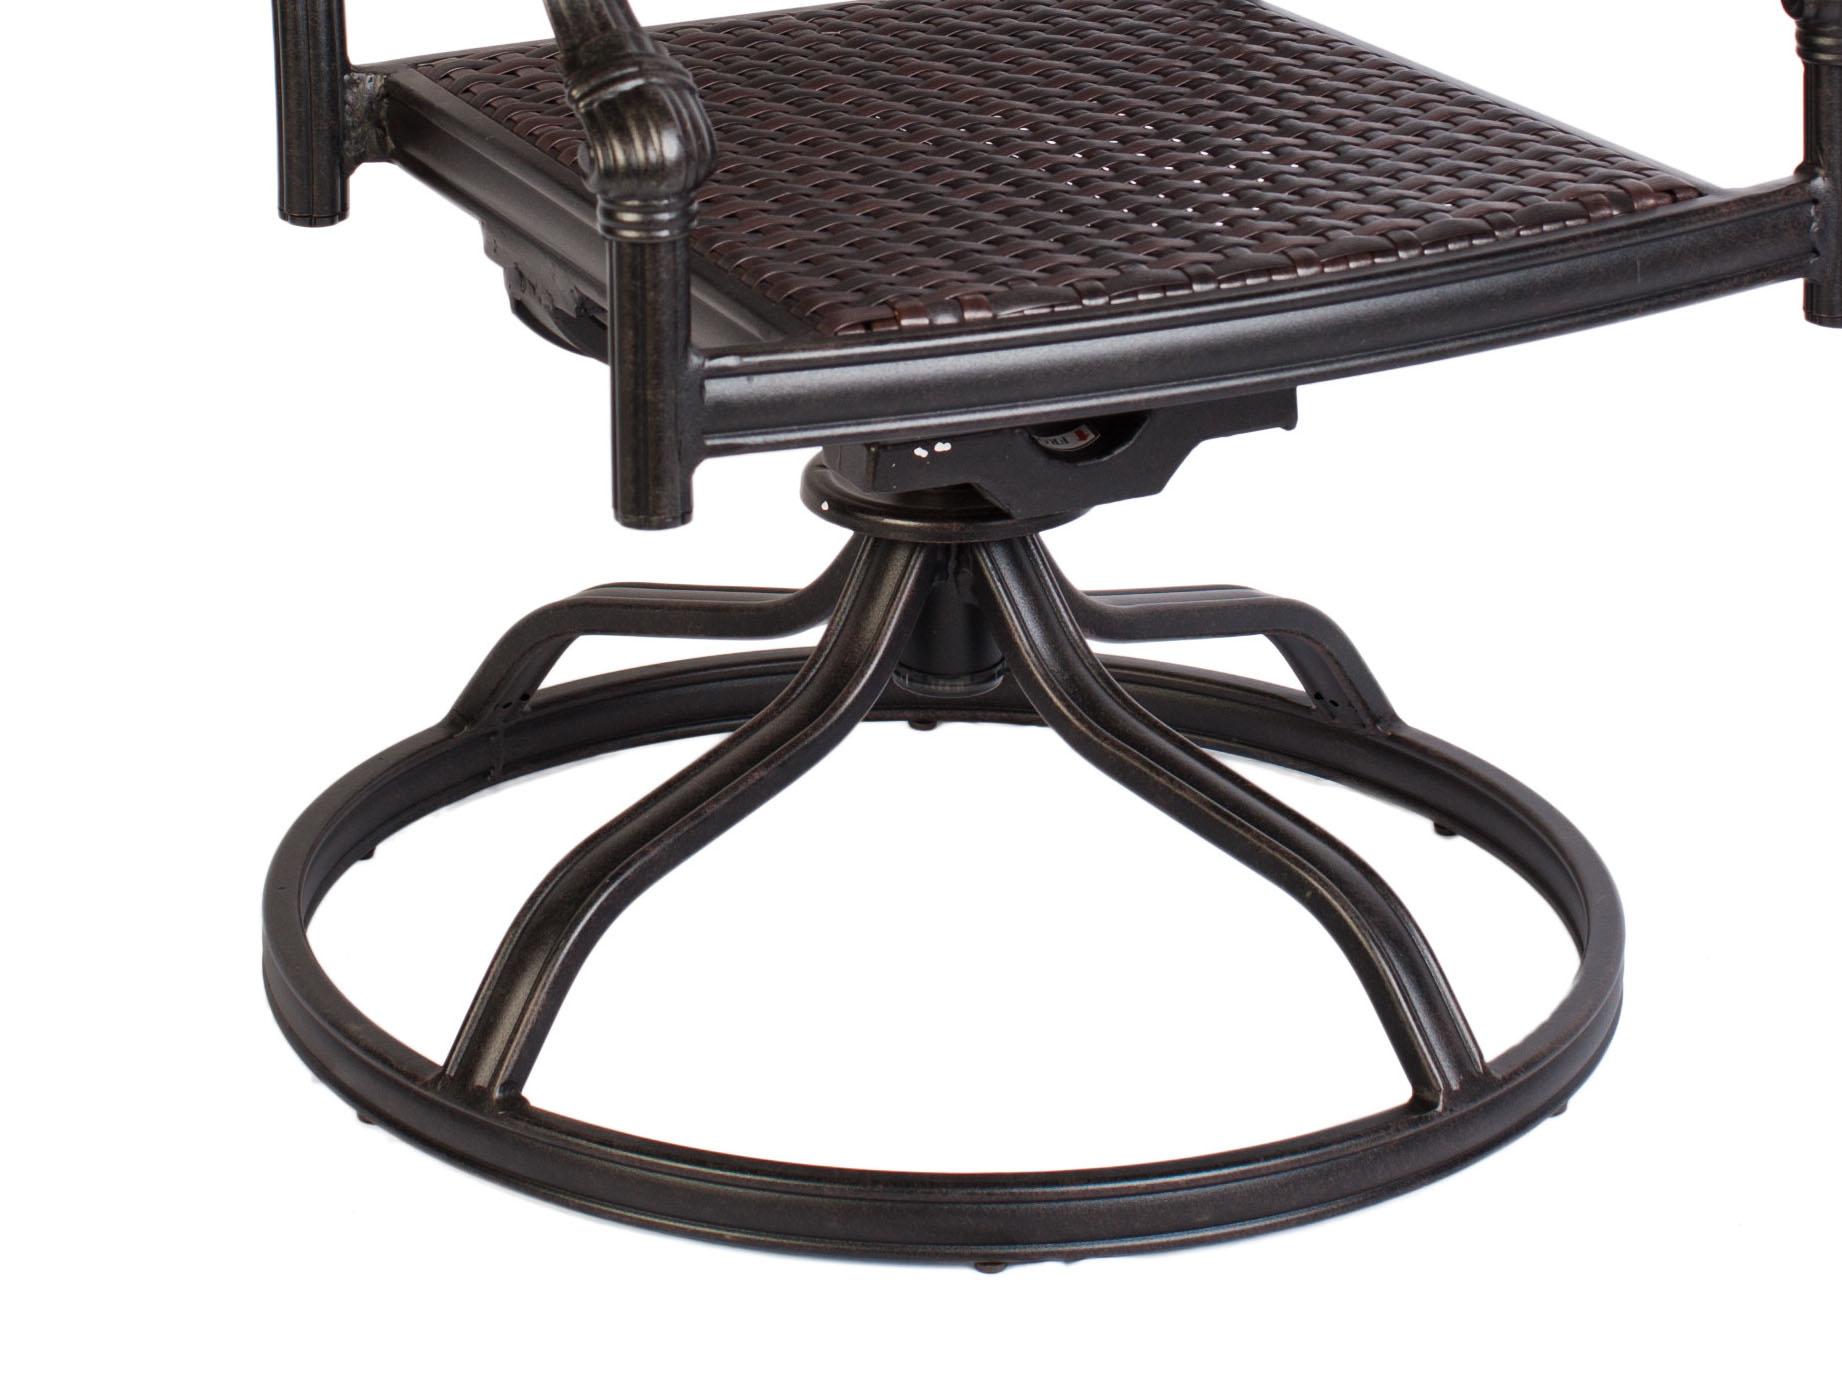 

                    
CaliPatio Aztec Outdoor Dining Chair Dark Brown/Bronze Wicker Purchase 
